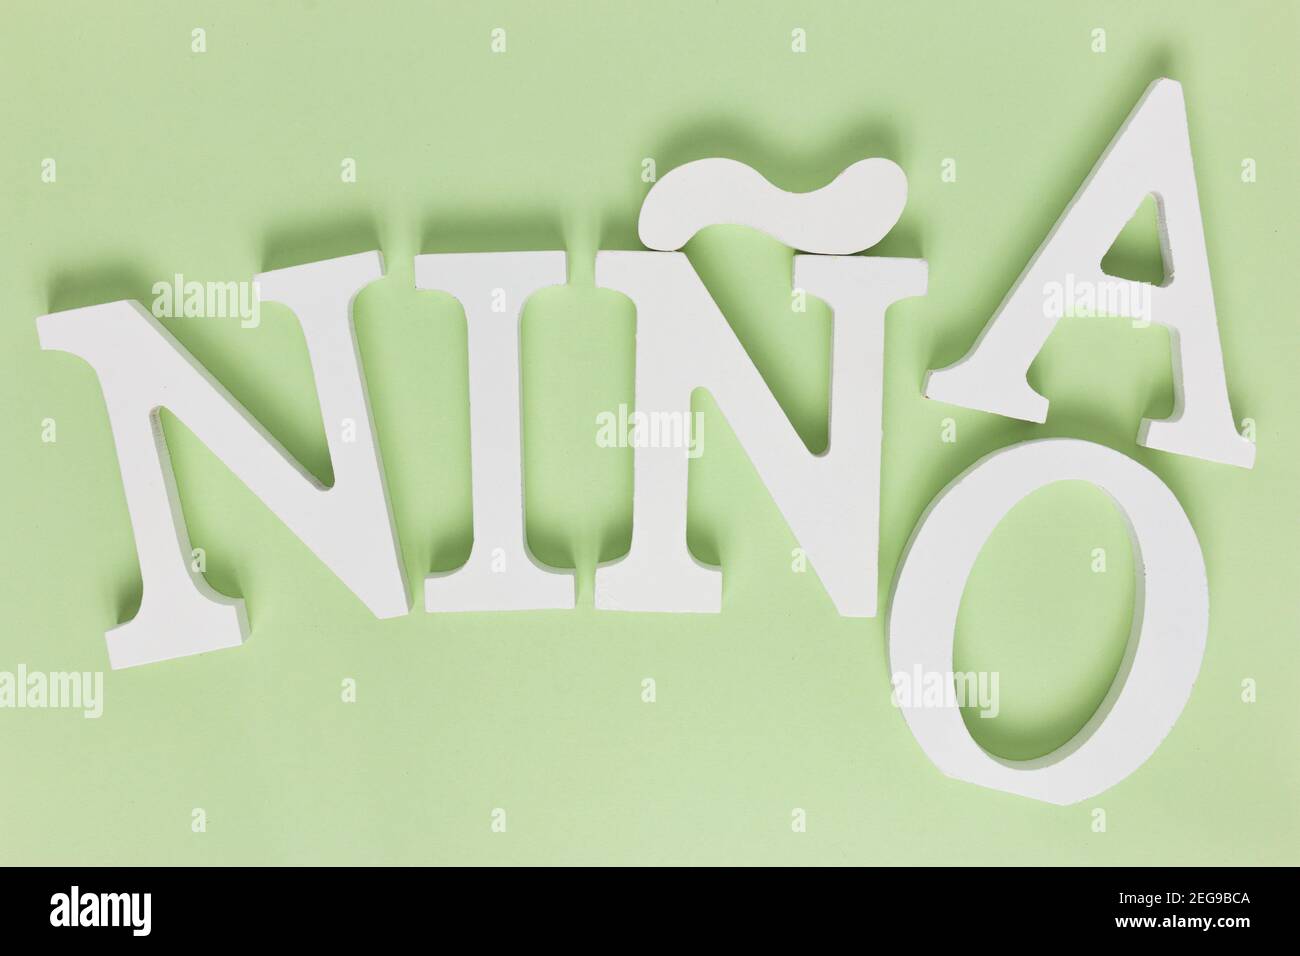 Vista dall'alto dello spagnolo 'NINO', scritta 'NINa' isolata su sfondo verde Foto - Alamy